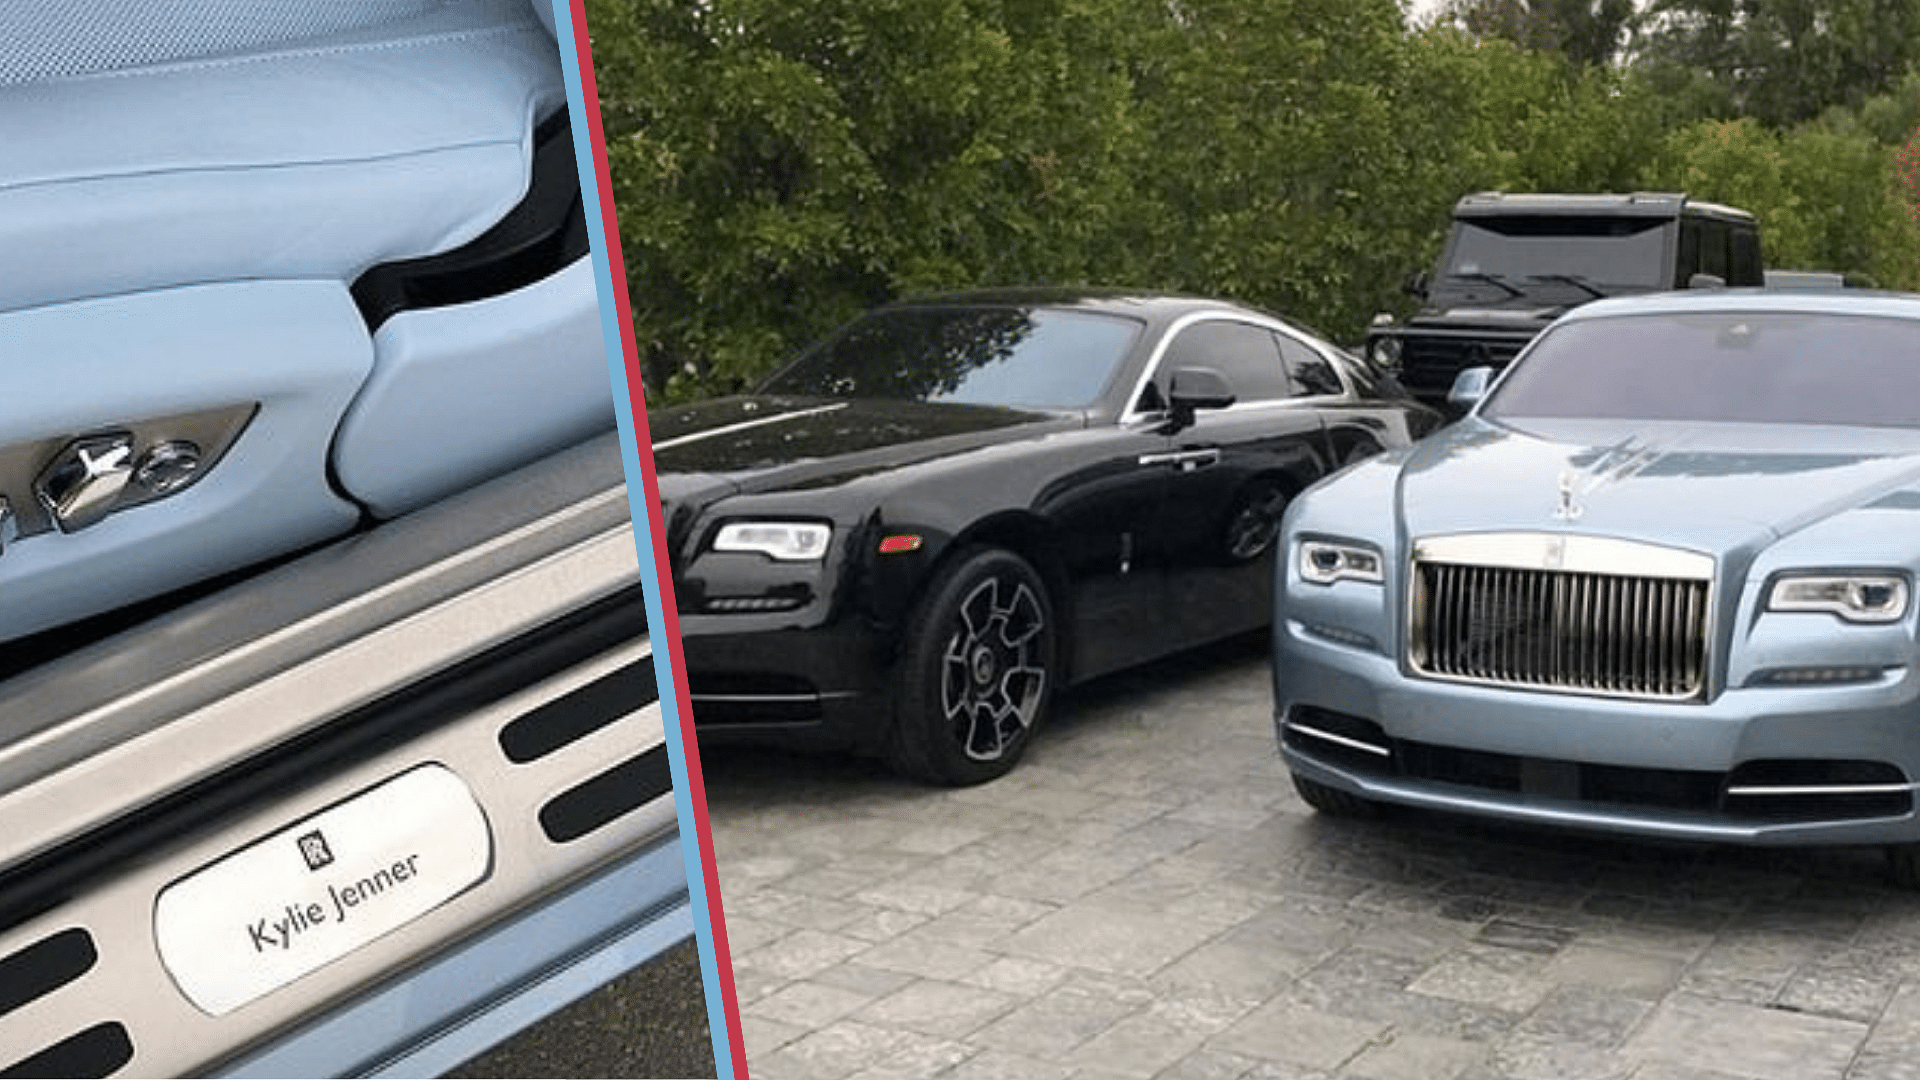 Kylie Jenner's Rolls-Royce Wraith